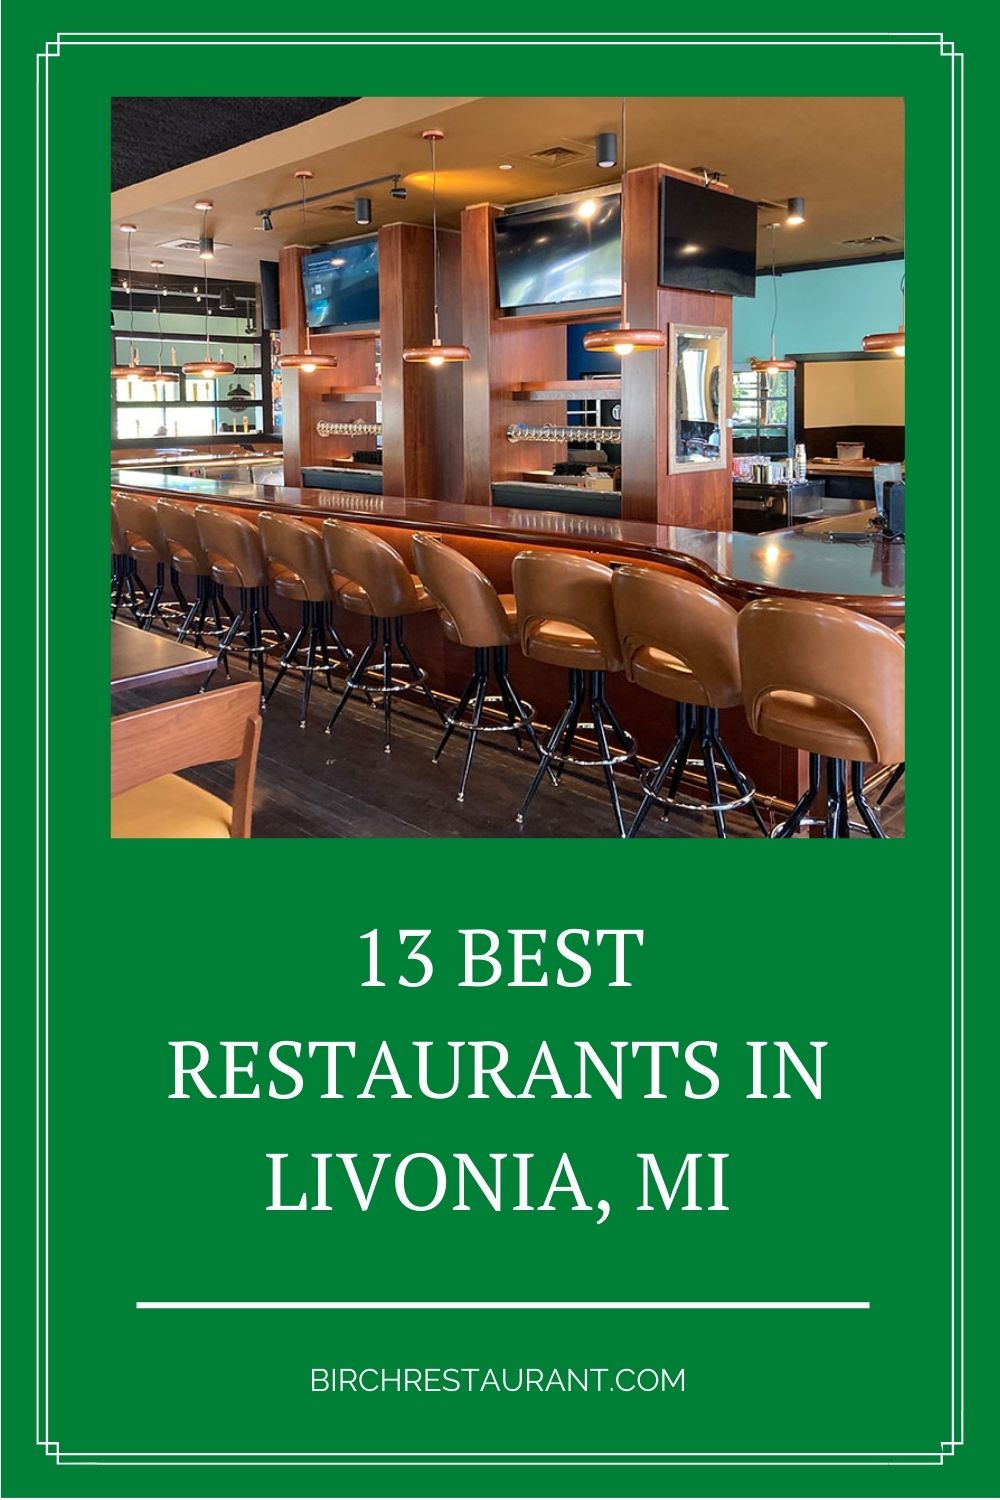 Best Restaurants in Livonia